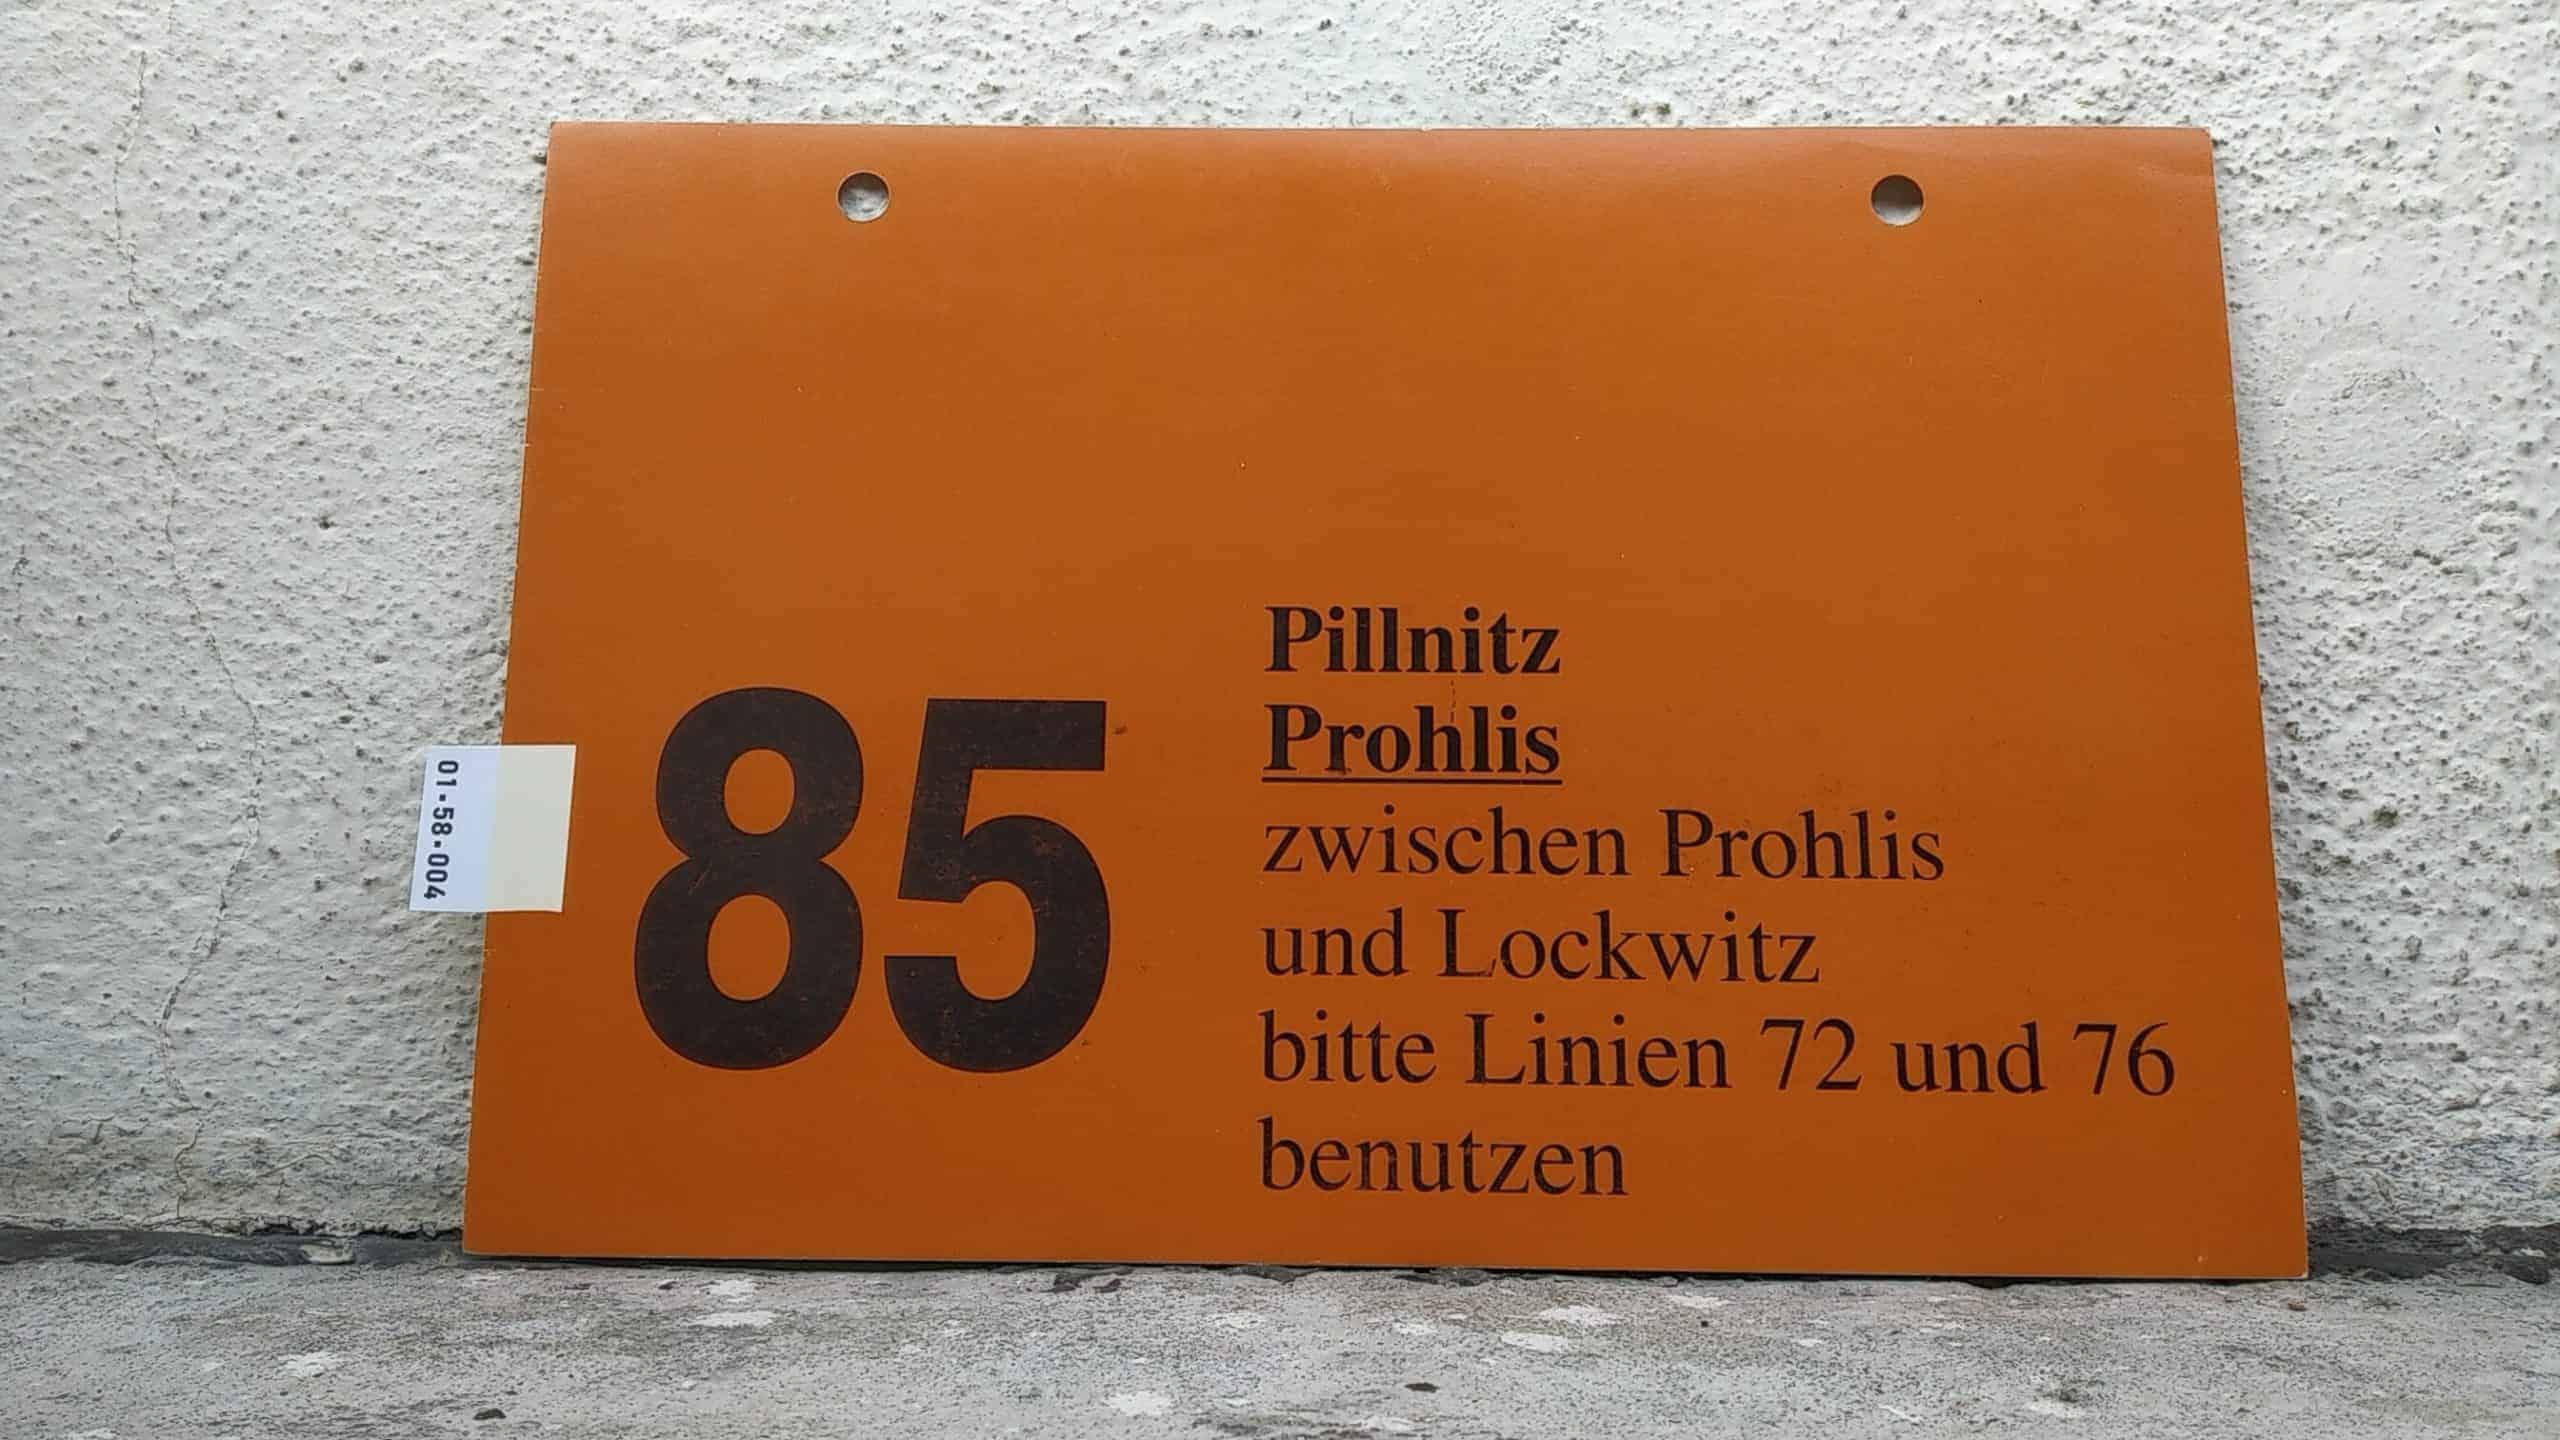 Ein seltenes Bus-Linienschild aus Dresden der Linie 85 von Pillnitz nach Prohlis